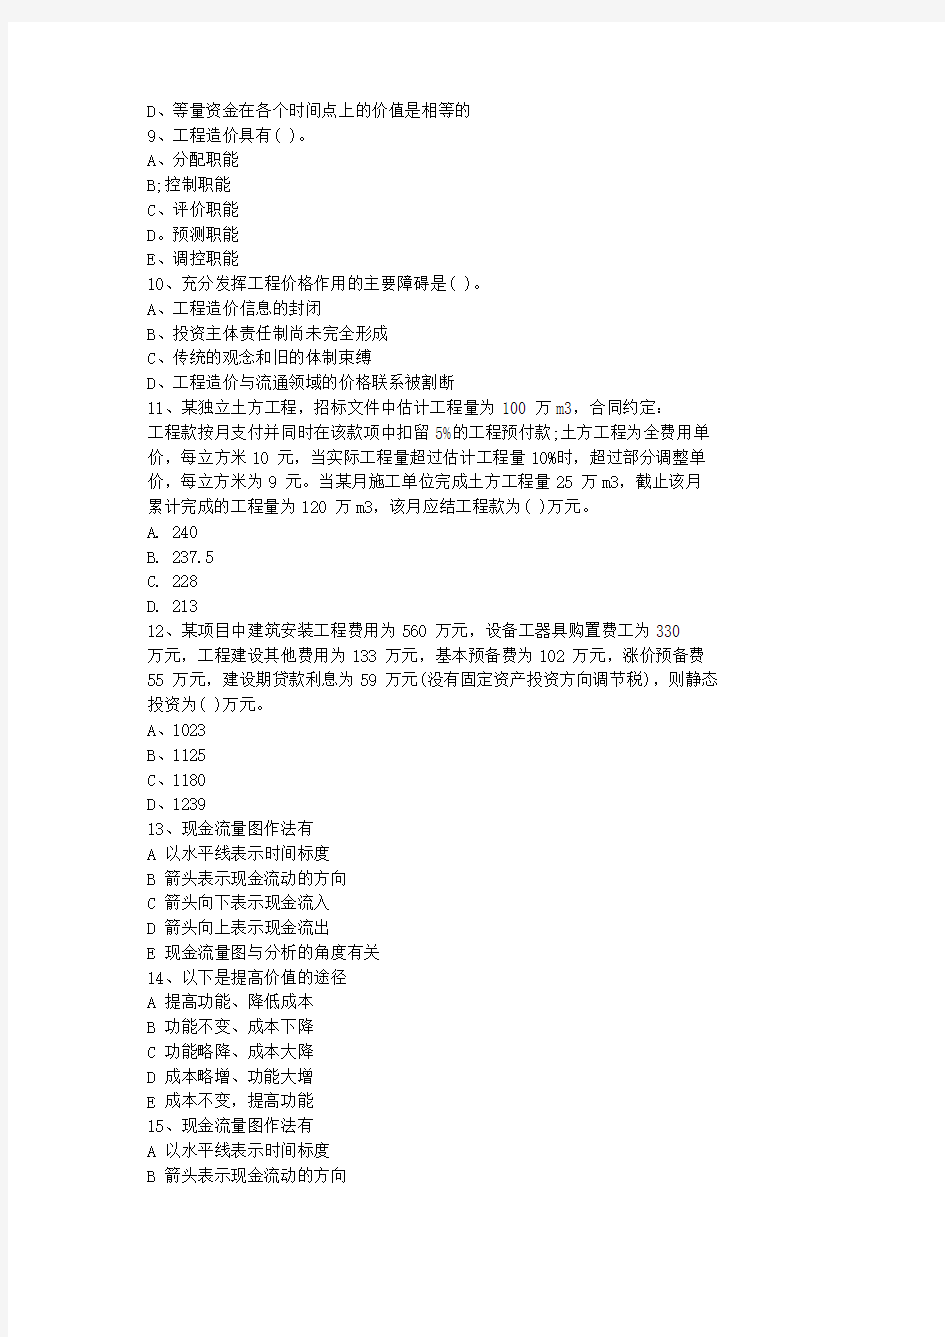 2012江苏省造价员考试试题(基础部分测试)最新考试试题库(完整版)